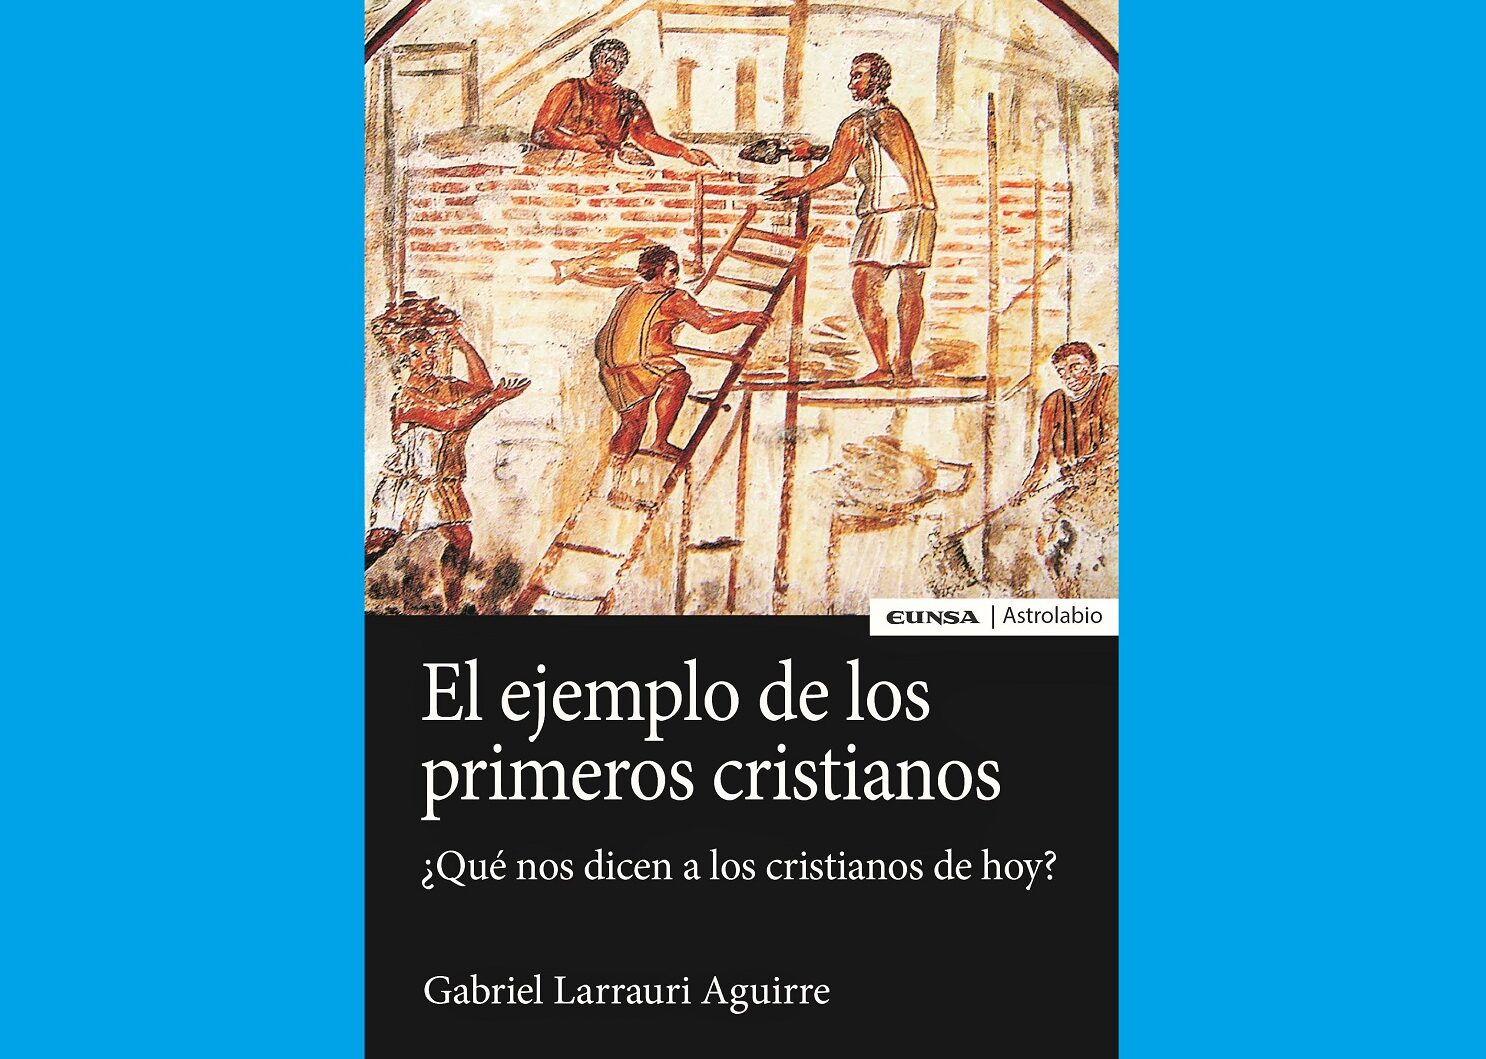 El ejemplo de los primeros cristianos Gabriel Larrauri 2